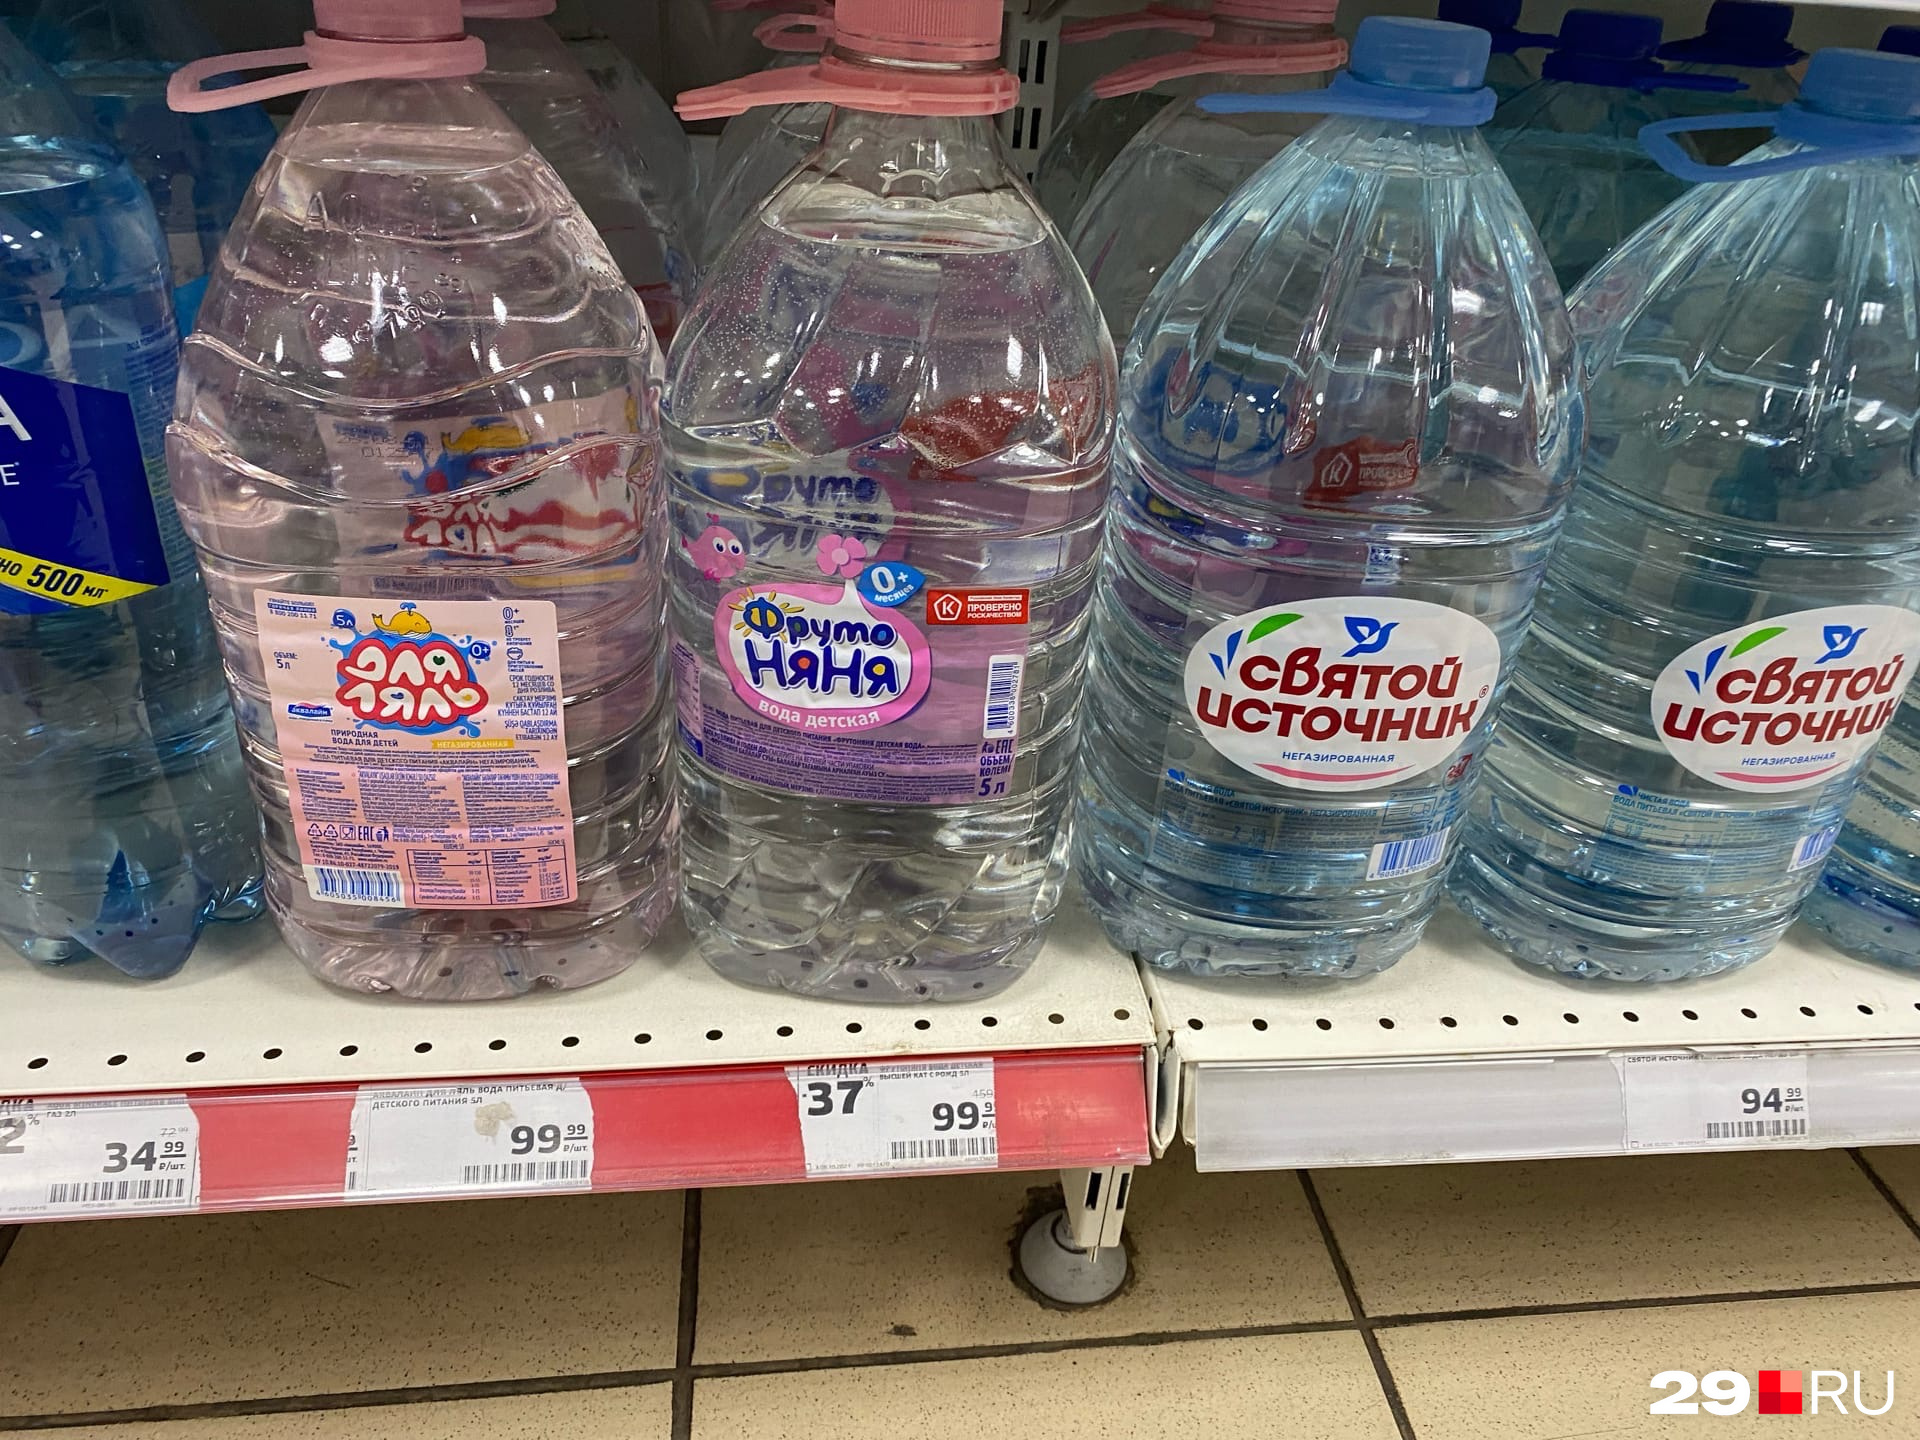 Кстати, на «Фруто Няню» в «Магните» скидка, вода стоит почти 100 рублей